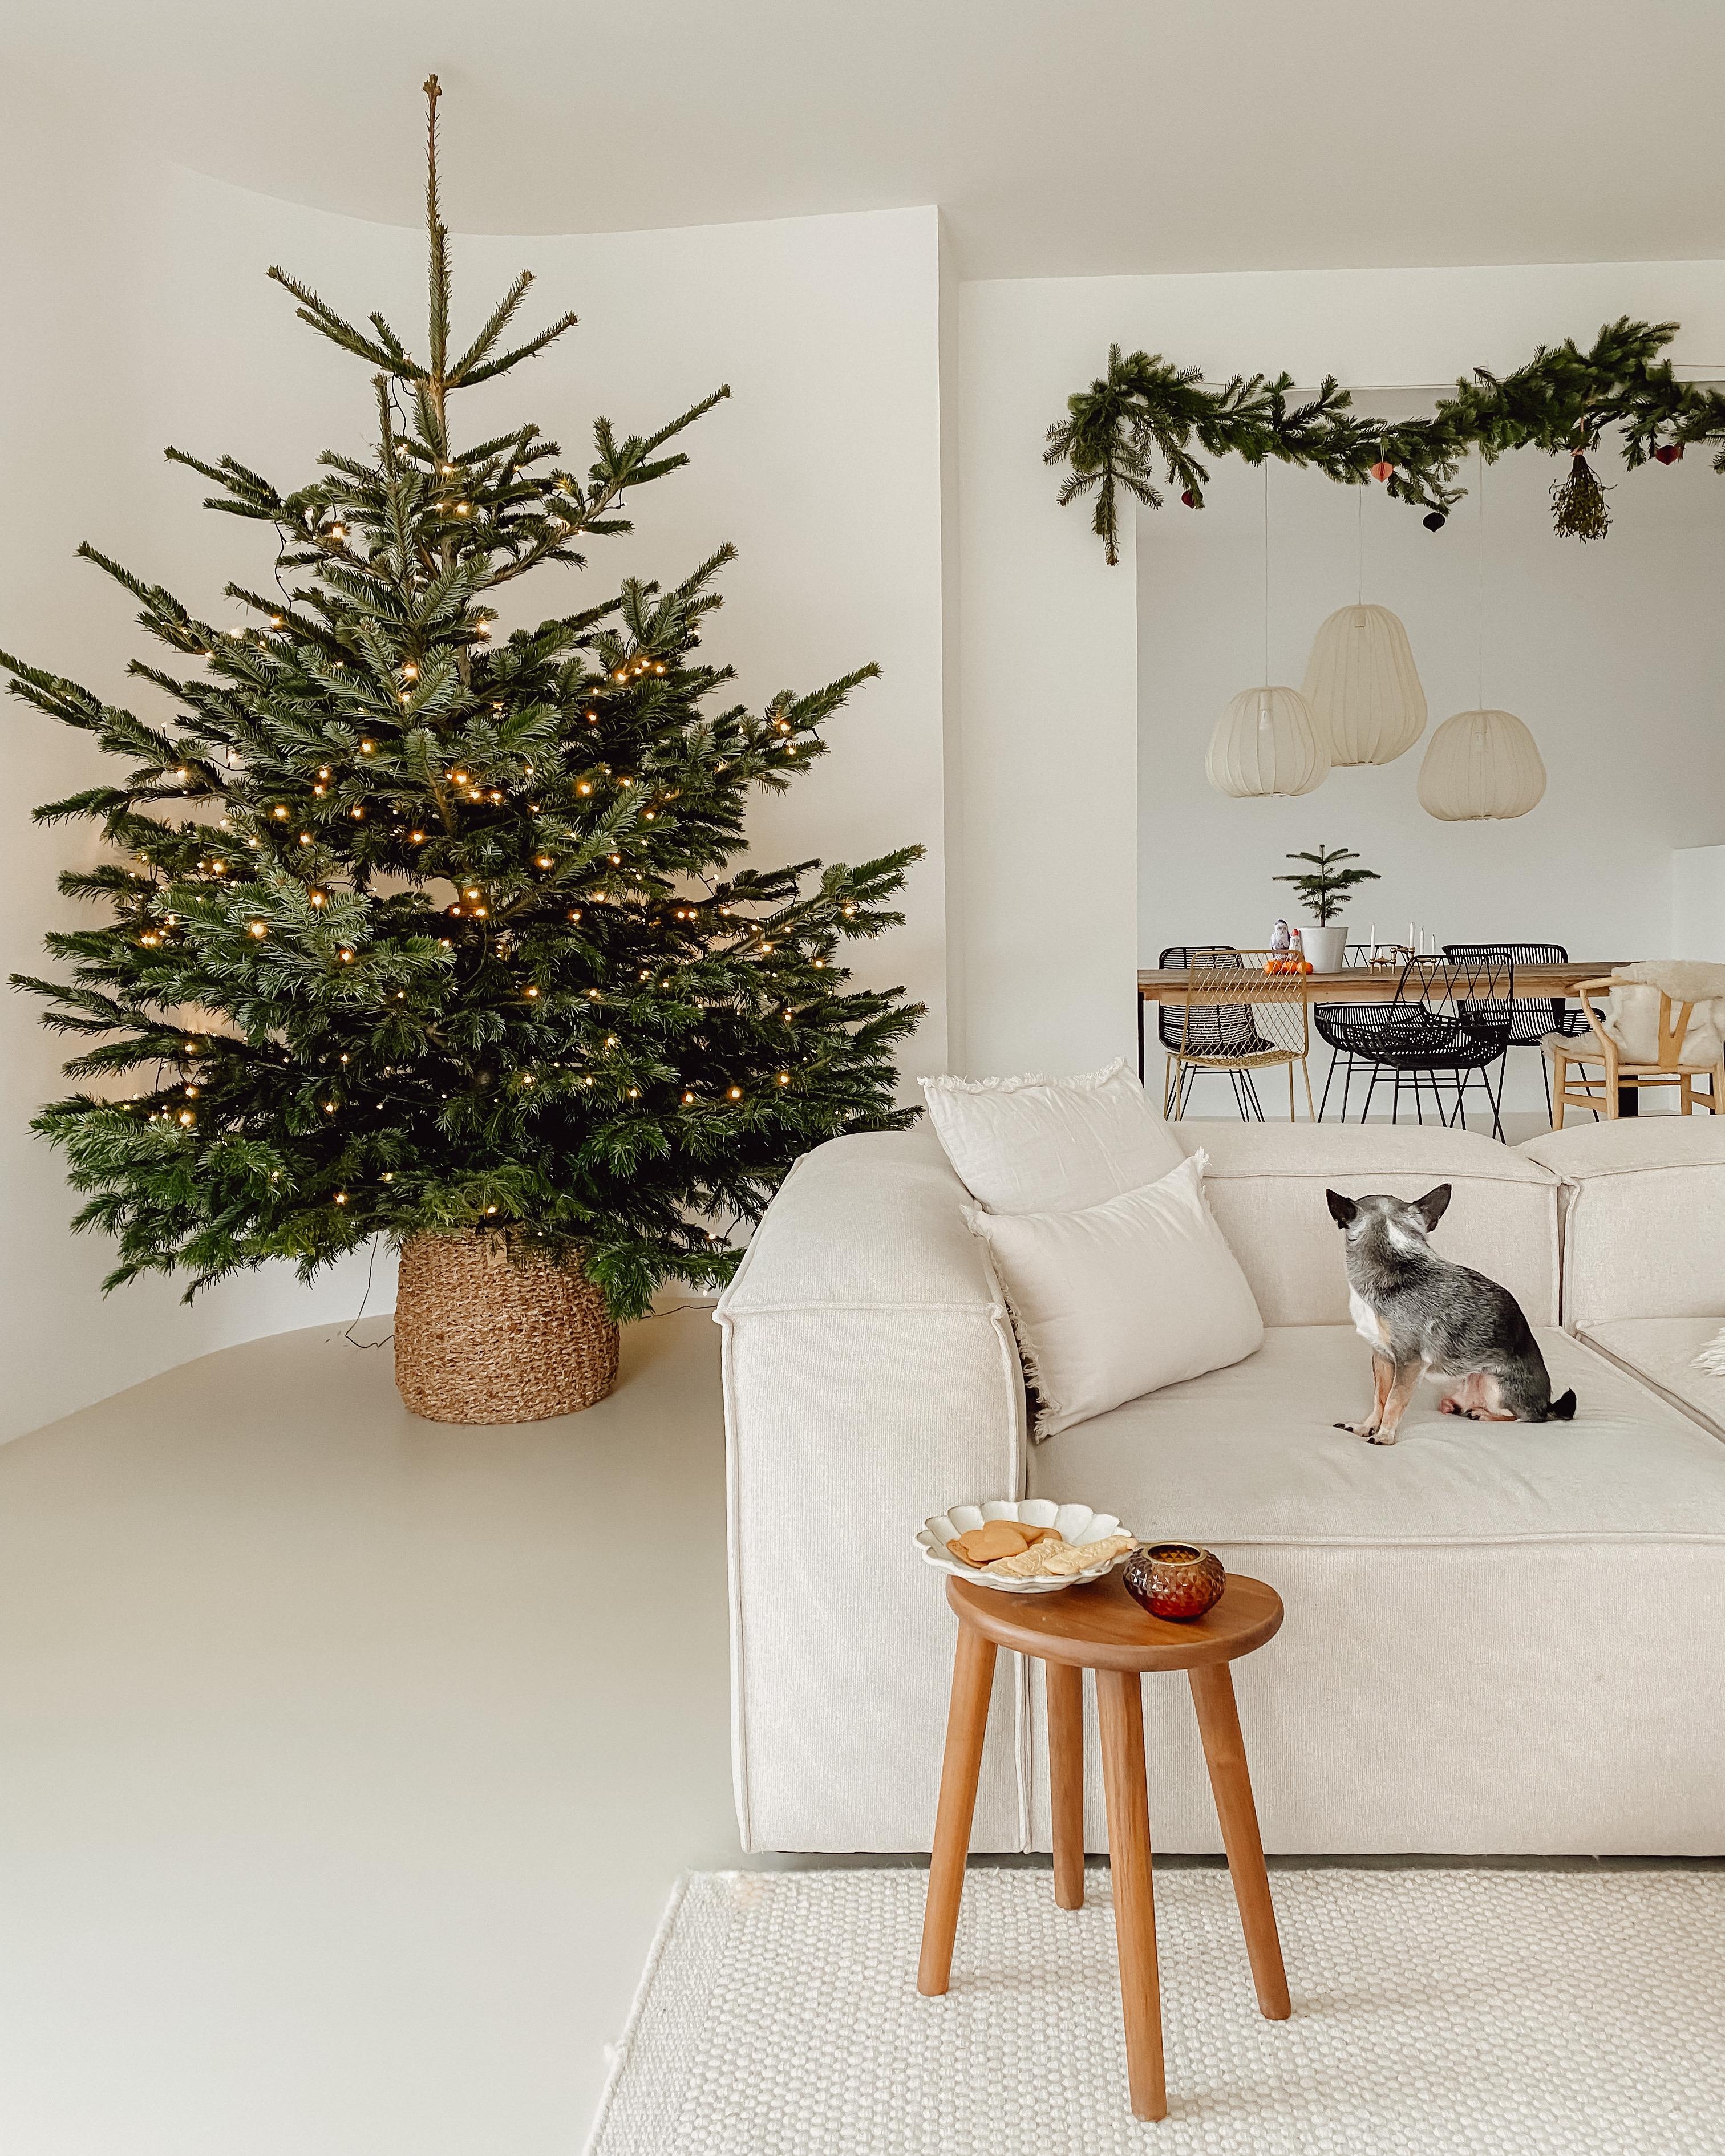 #weihnachtszeit #weihnachtsdeko #weihnachtsbaum #christmastree 
#wohnzimmer #beige #korb #skandi #couchliebt #clean